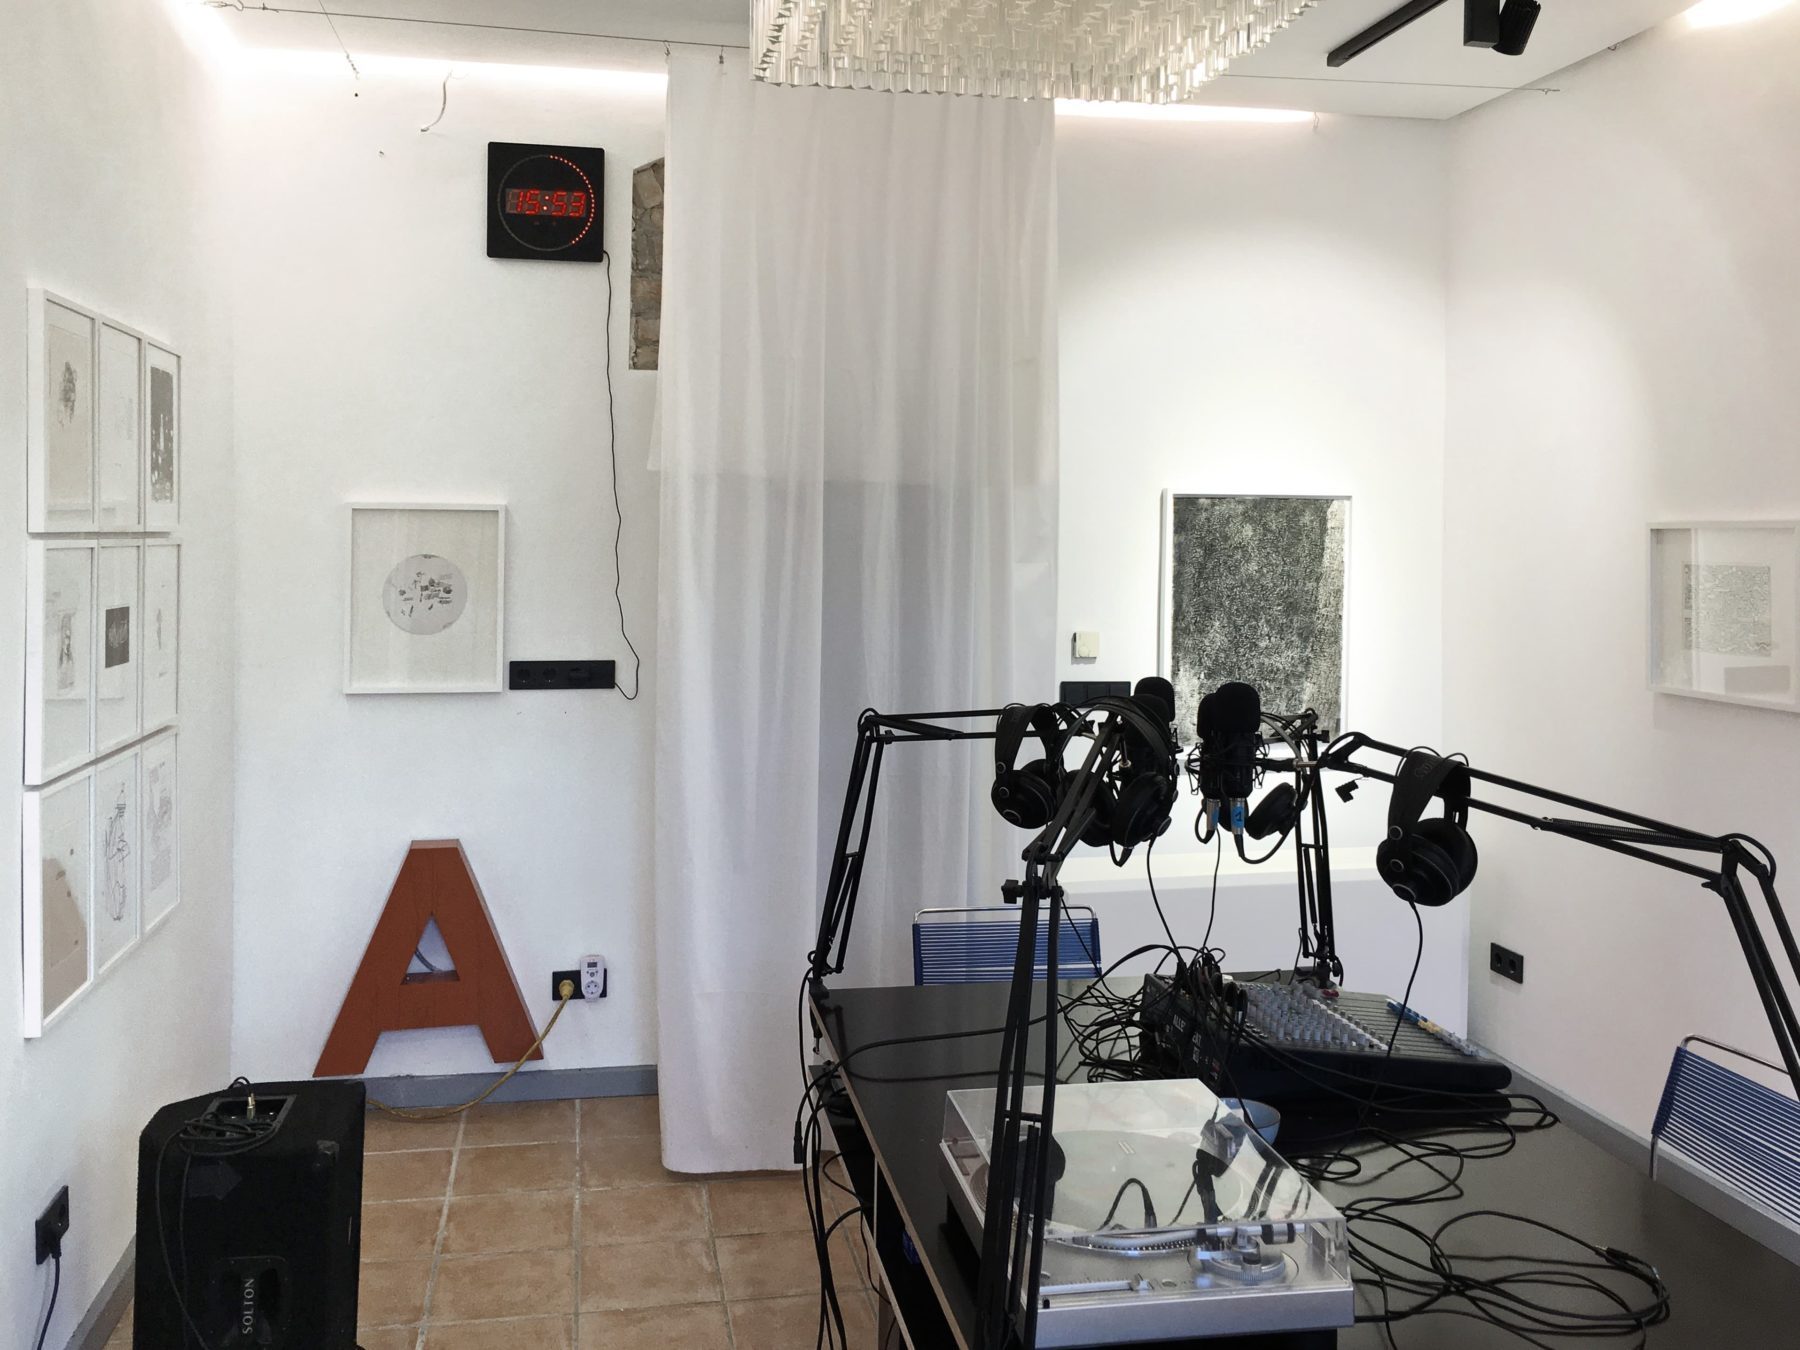 Studio mit Mikrofonen, Kopfhörern und Mischpulten